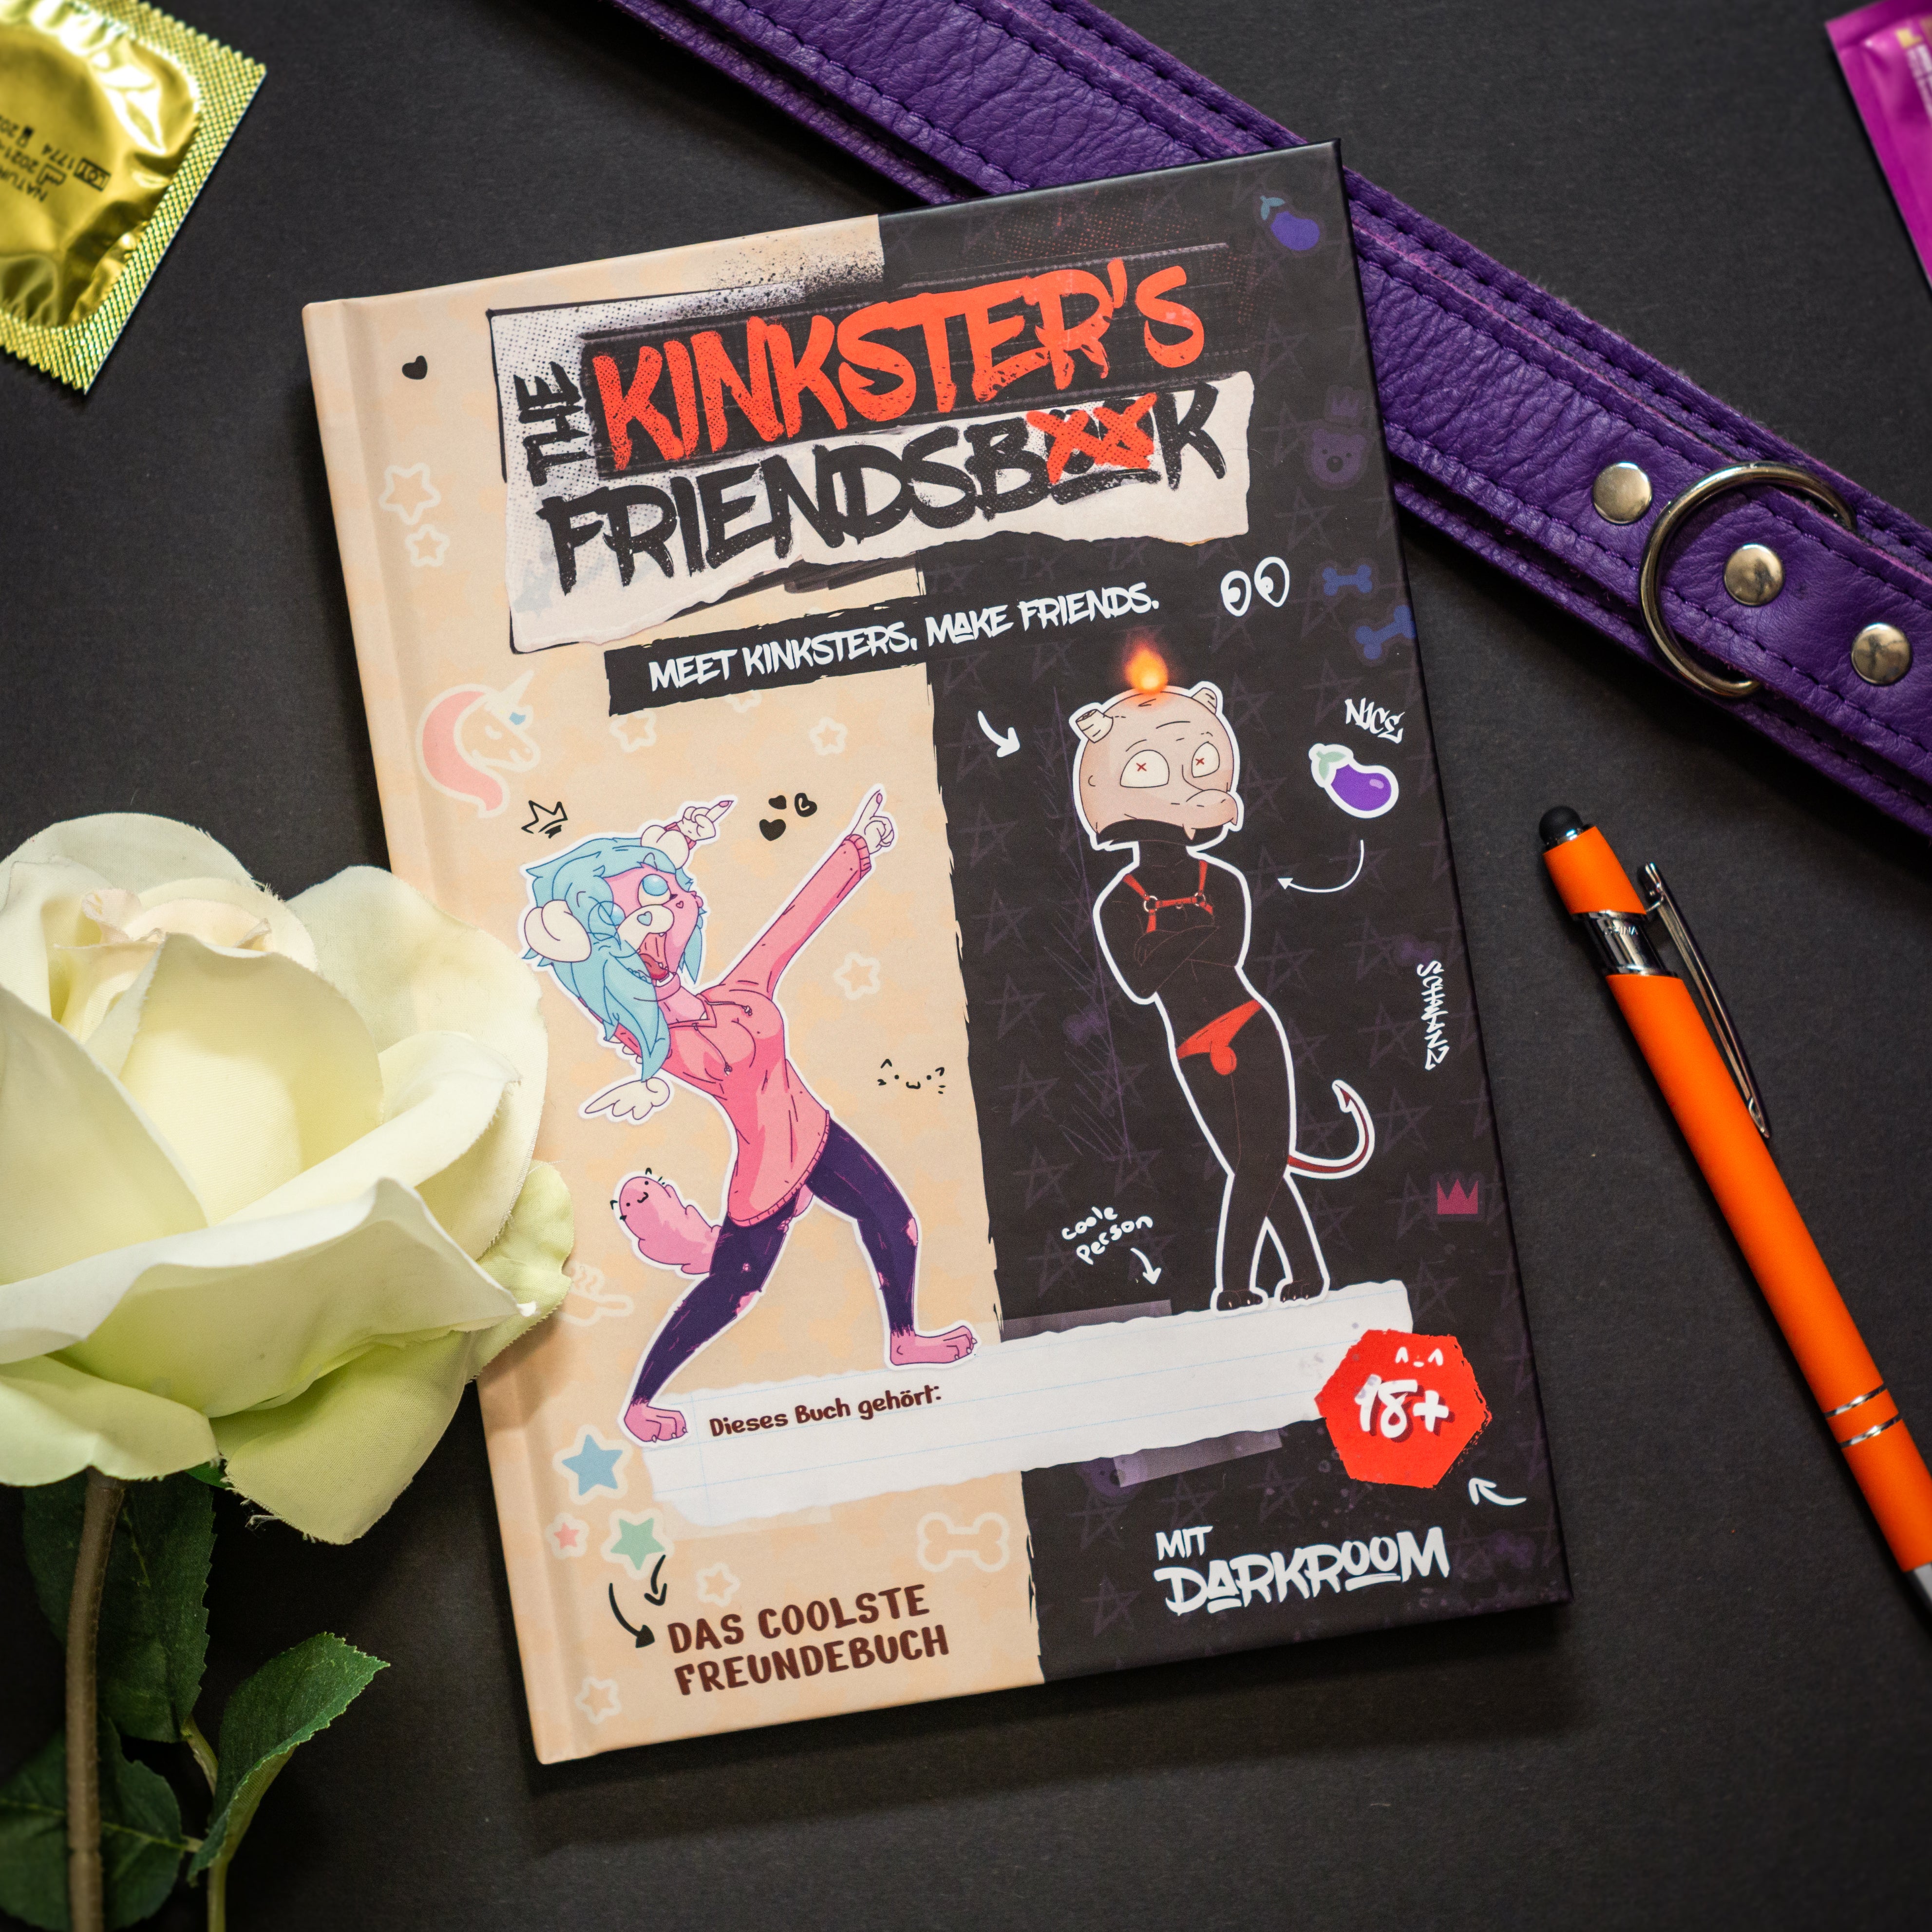 The Kinkster's Friendsbook